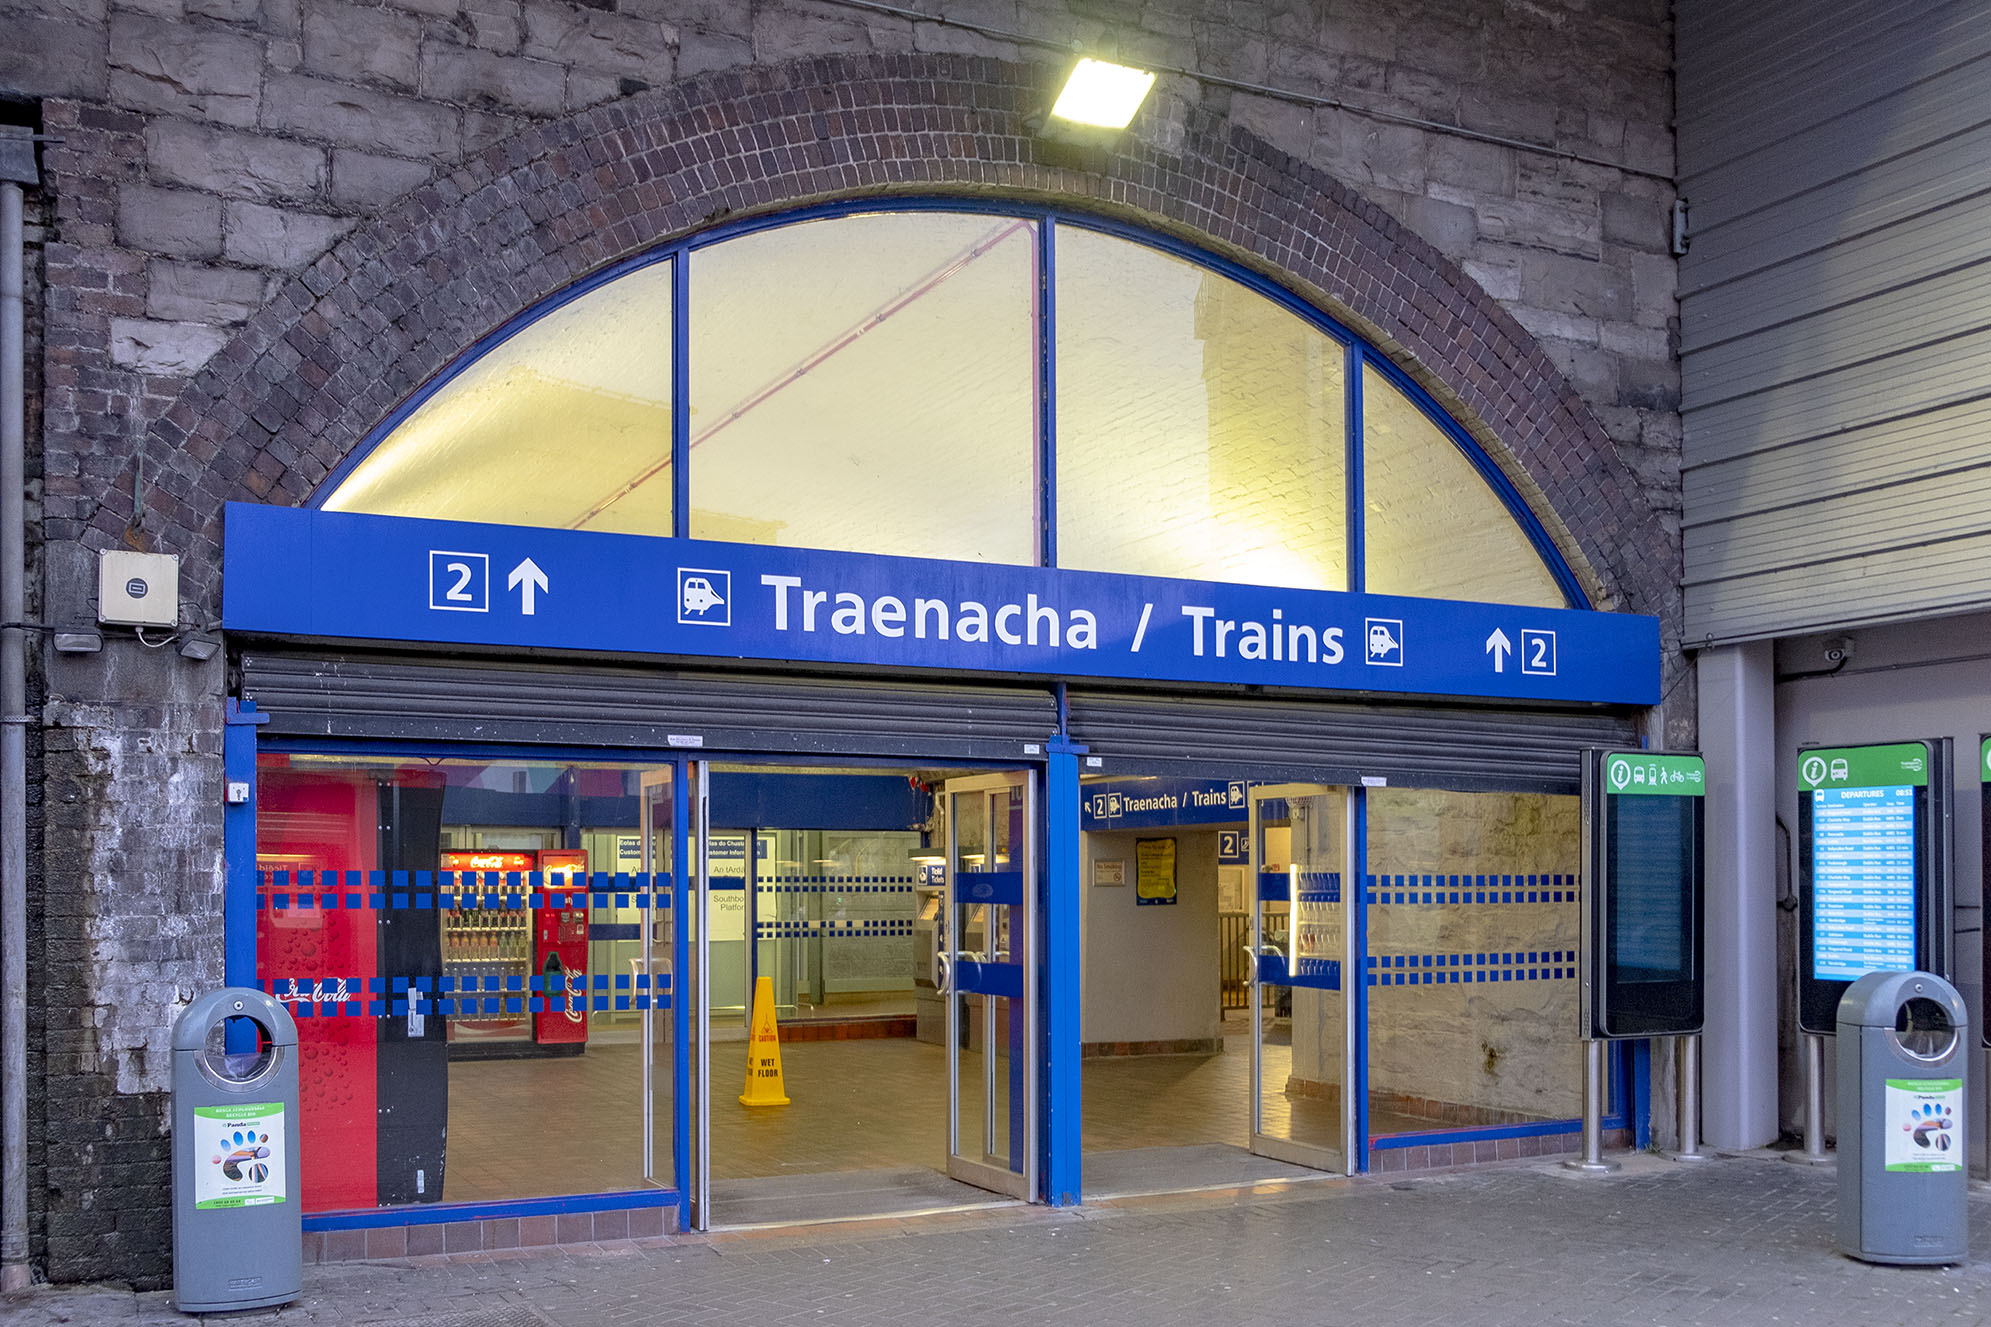 Tara street station Dublin